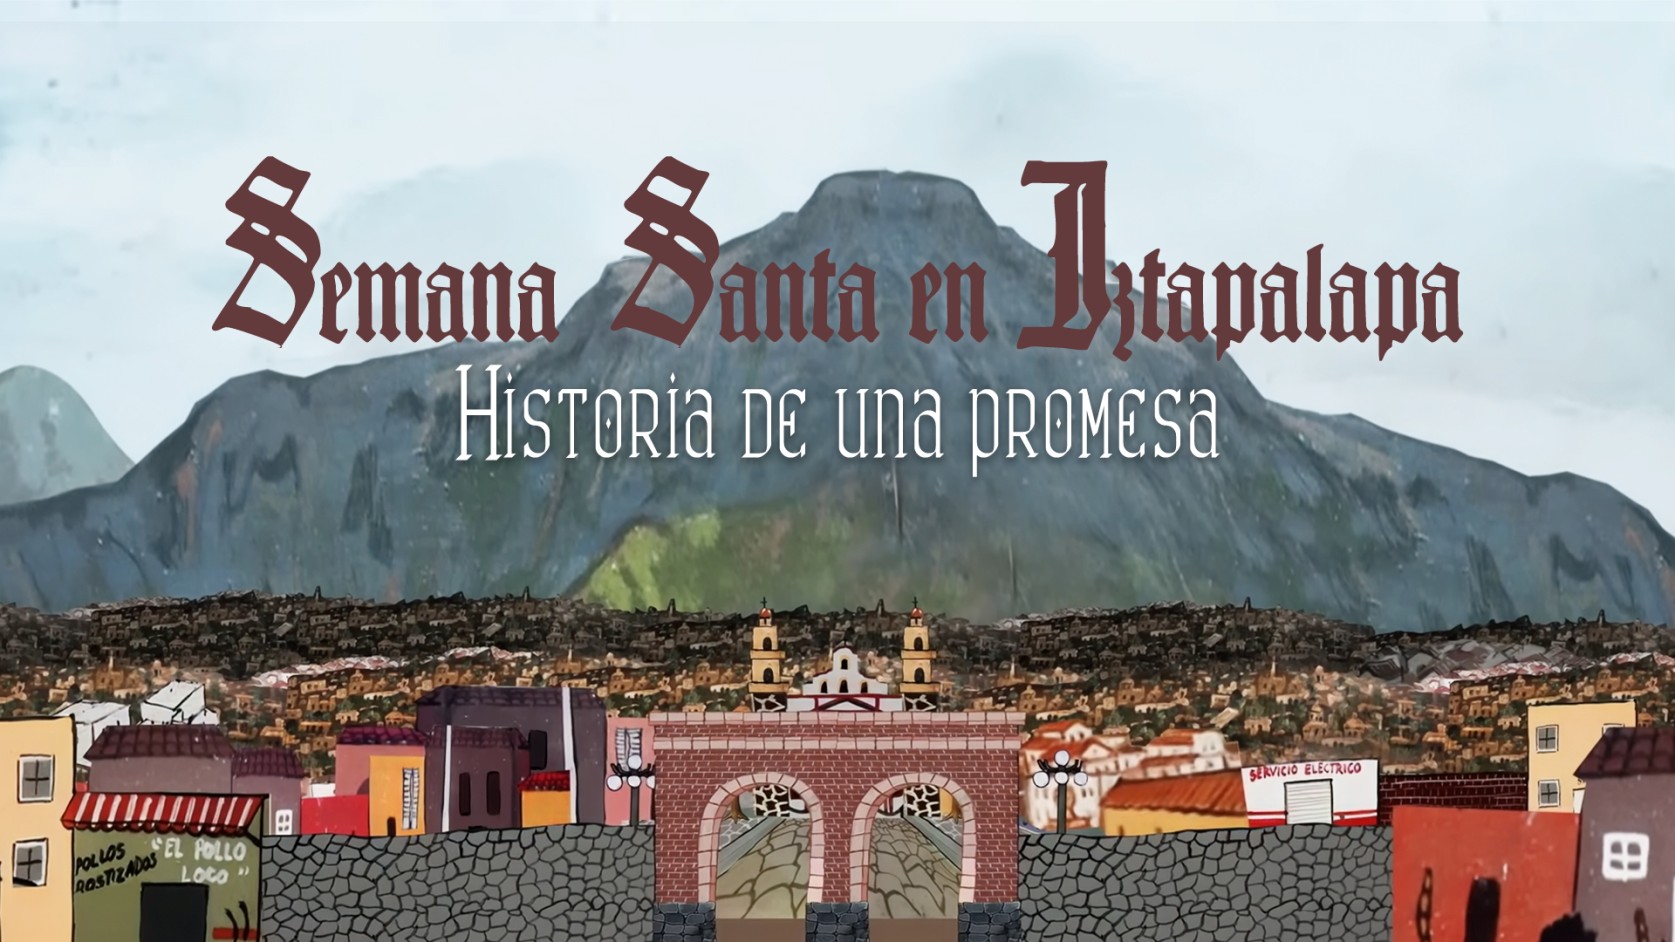 Semana Santa en Iztapalapa: Historia de una promesa